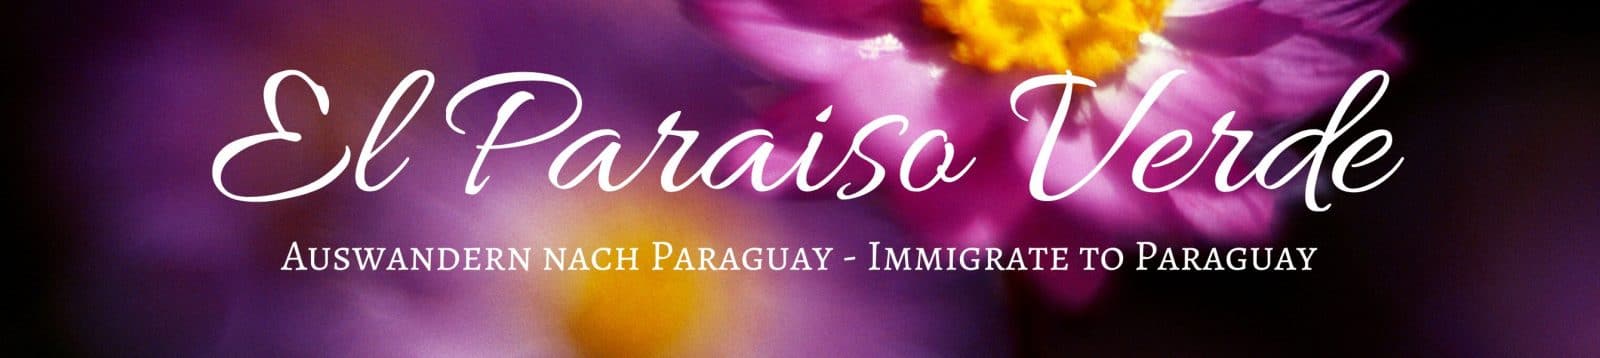 auswandern nach Paraguay